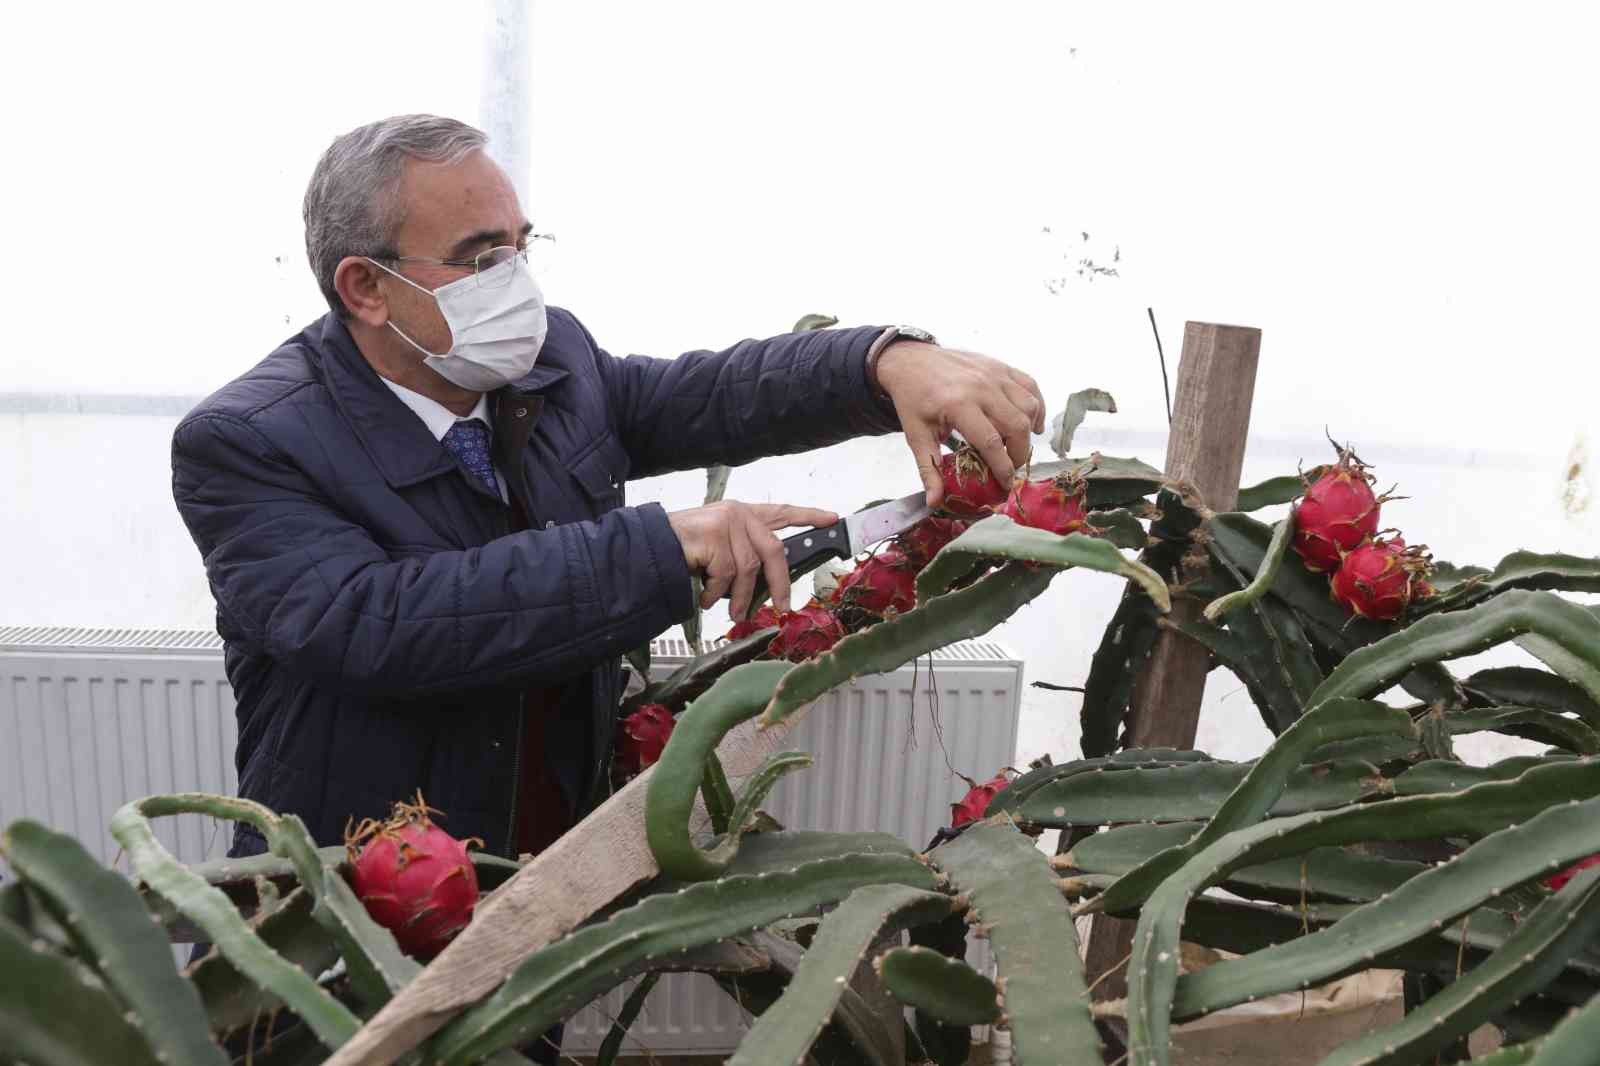 Hekim Sinan Tıbbi Bitkiler Merkezi’nde ejder meyvesi ve muz hasadı #kutahya